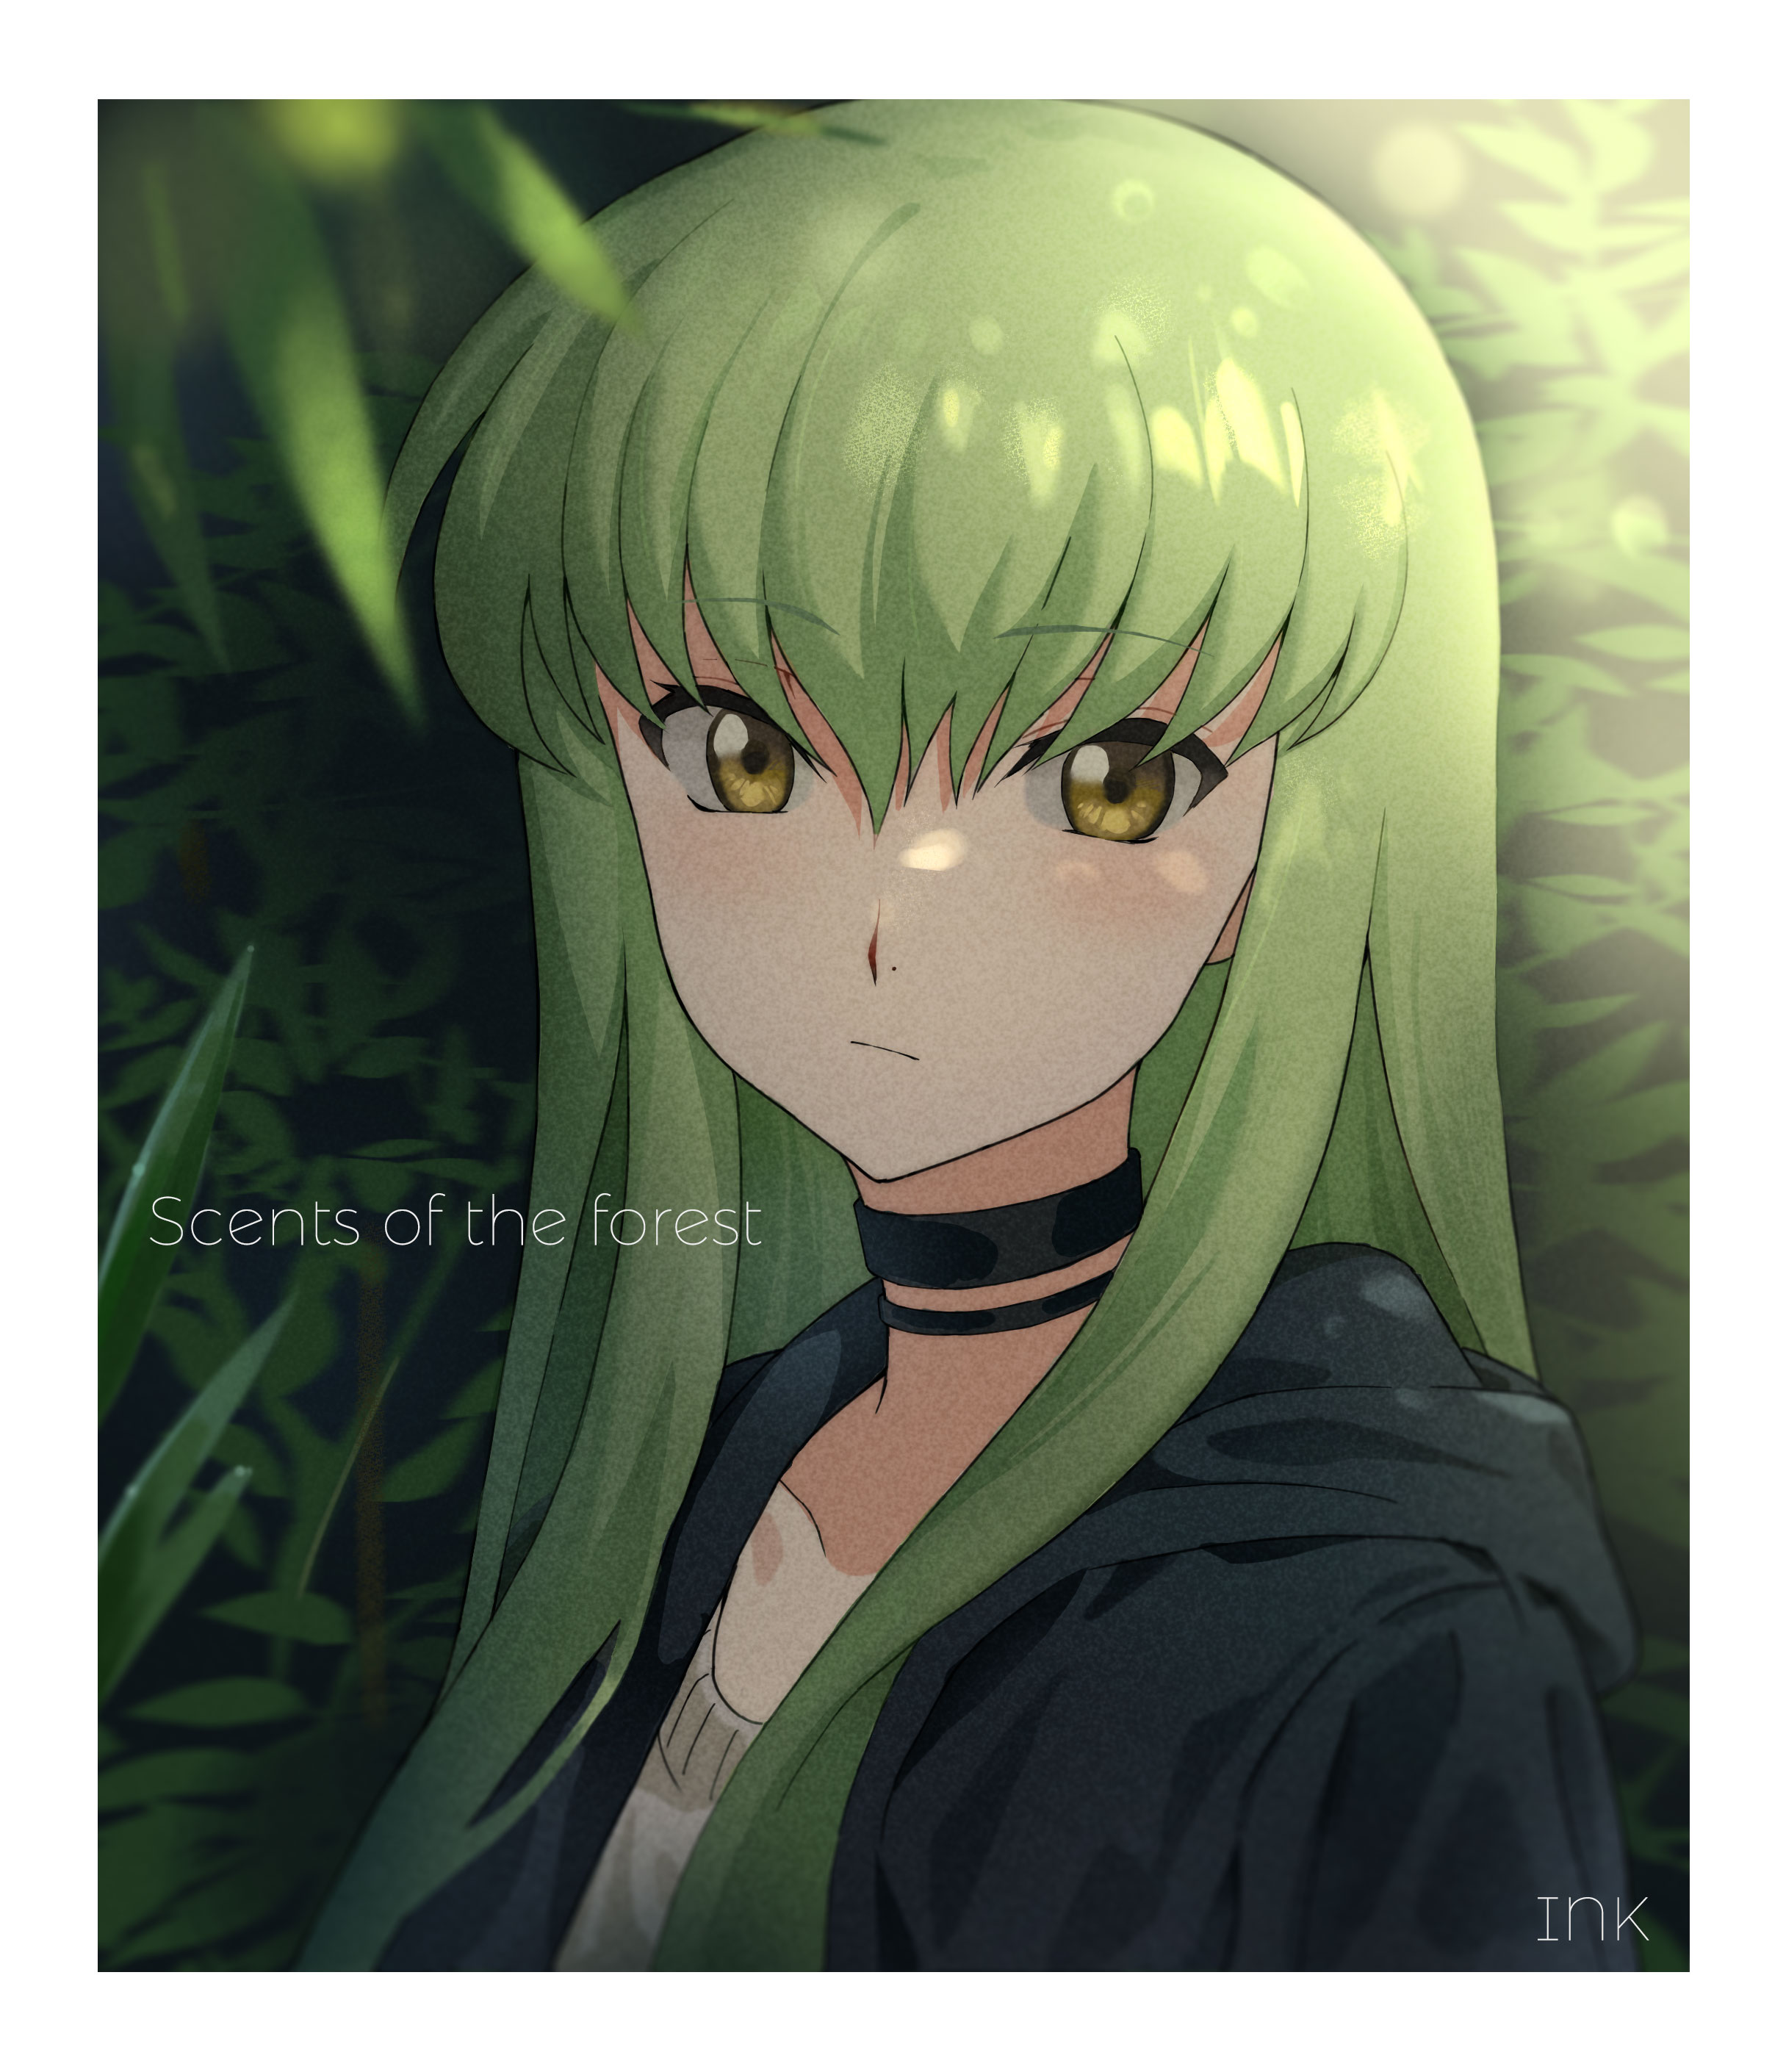 Anime Anime Girls Code Geass C C Code Geass Long Hair Green Hair Solo Artwork Digital Art Fan Art 2431x2820